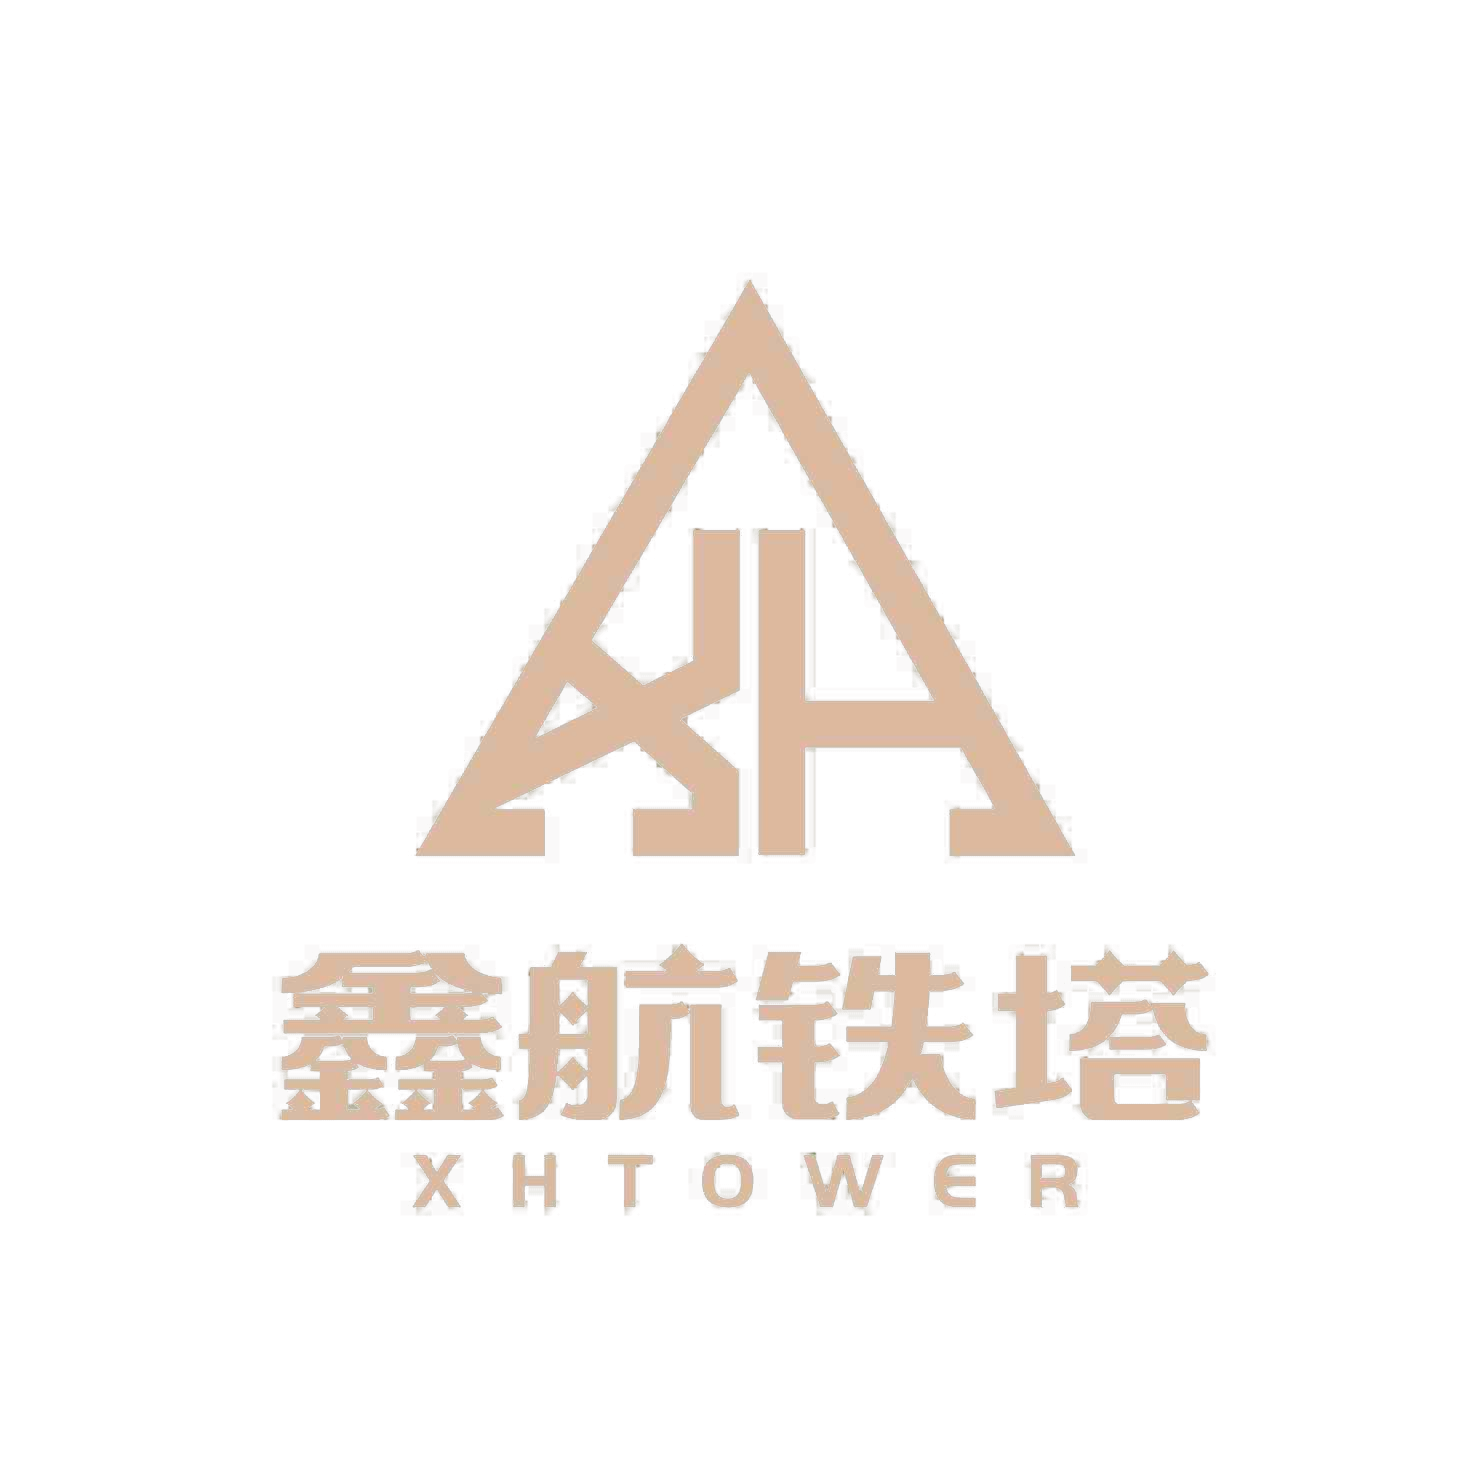 Tecnologia Co. da torre de Xinhang, Ltd.